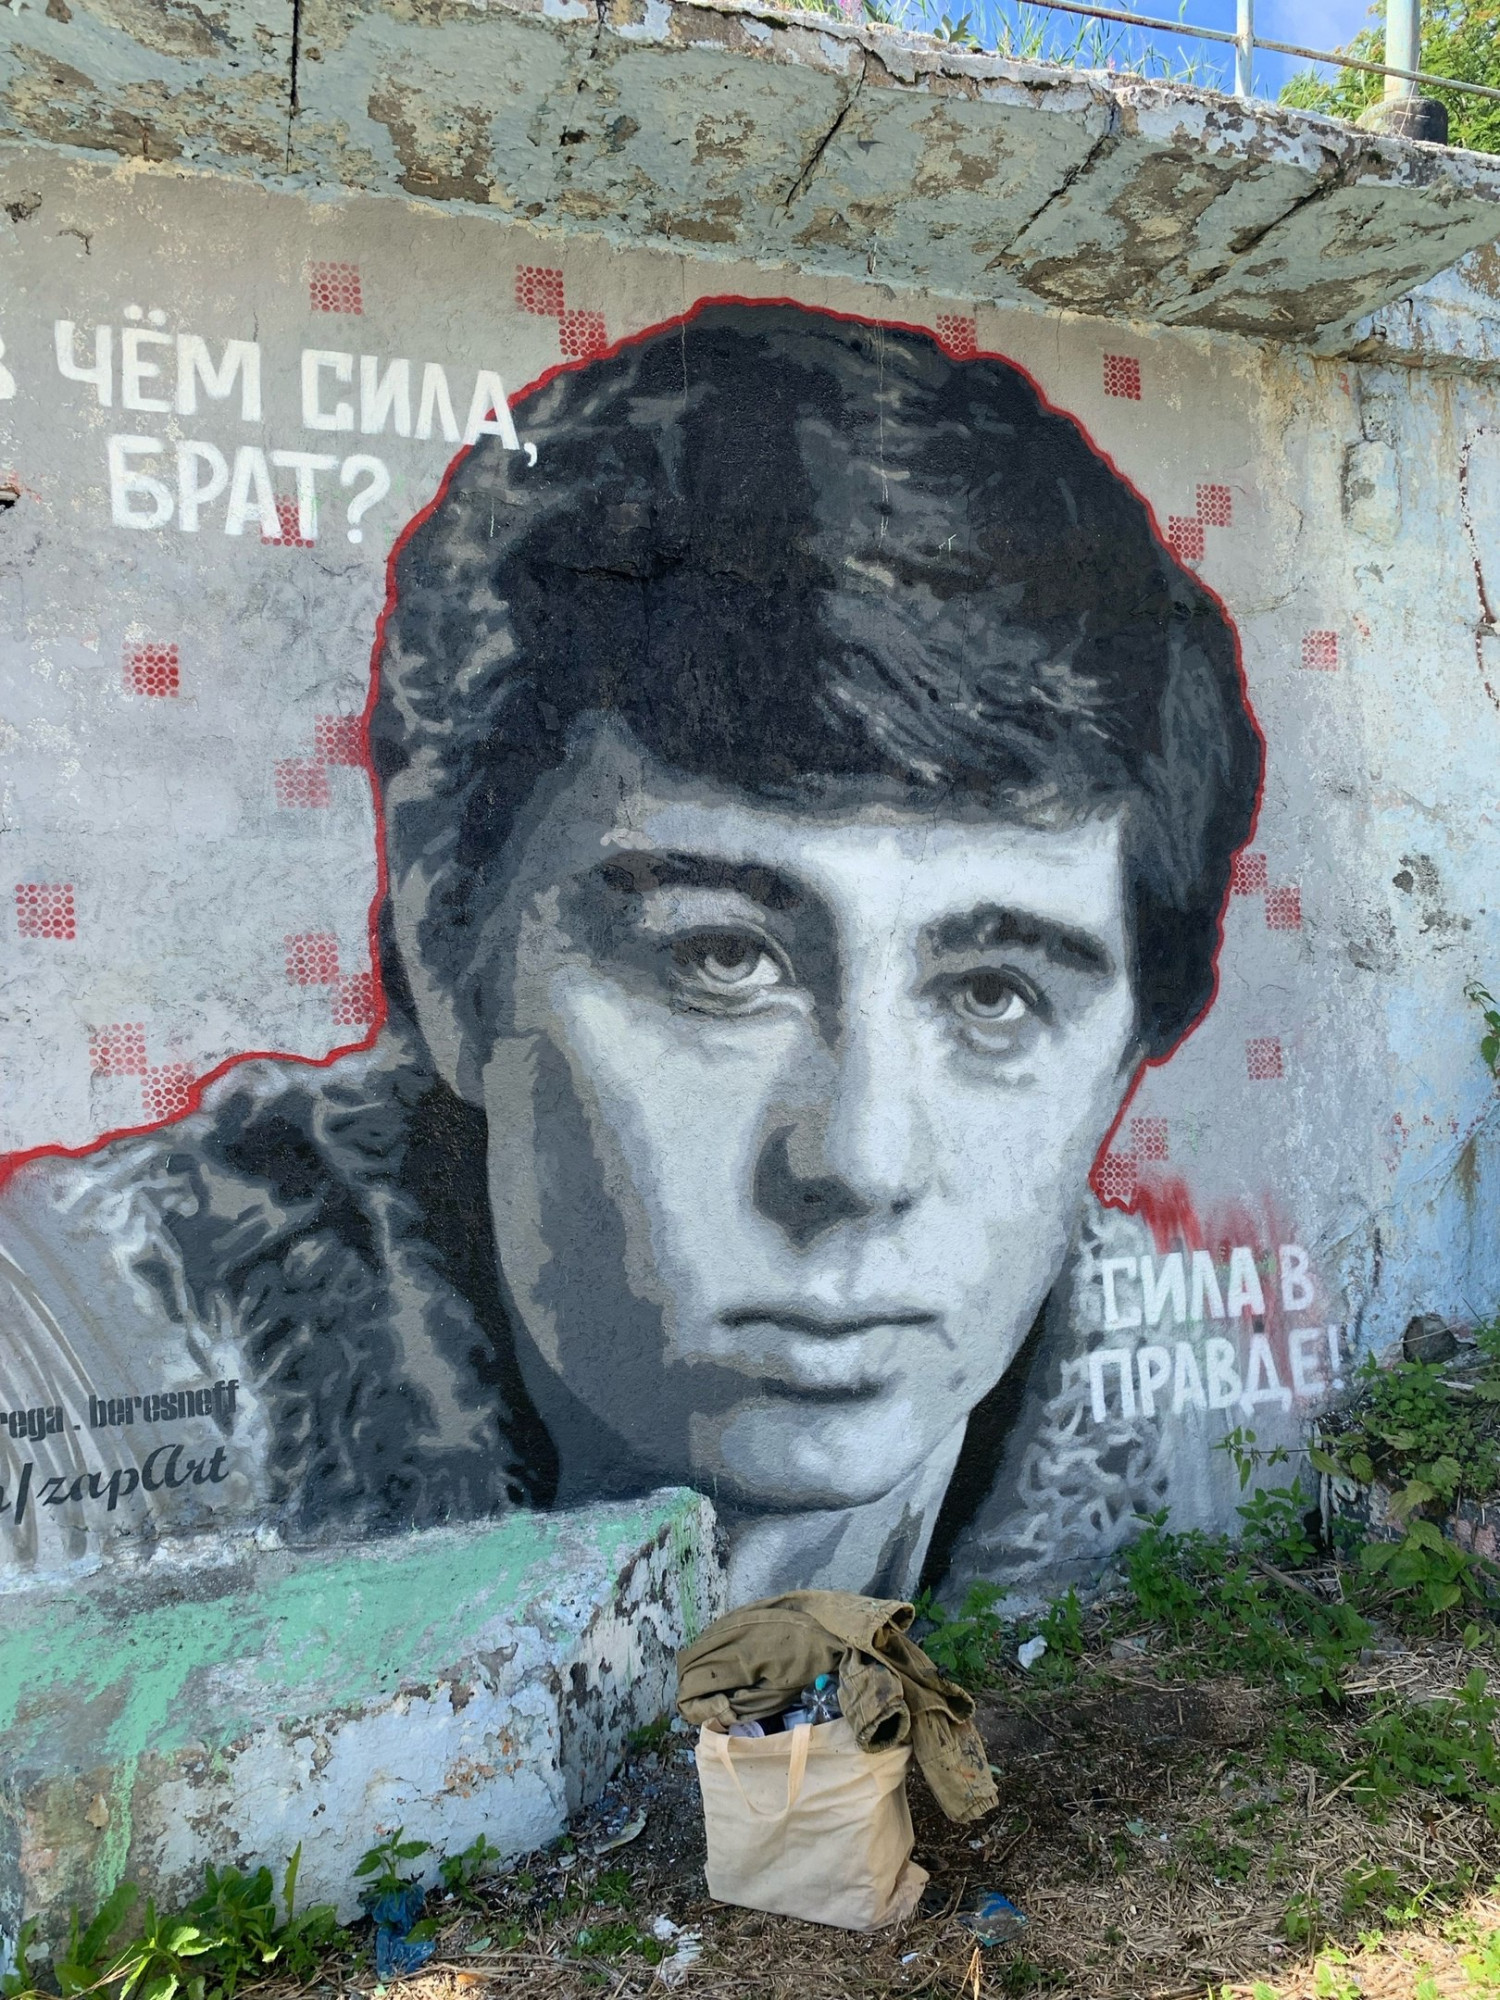 Полярнинский художник во второй раз восстановил портрет актёра Сергея Бодрова